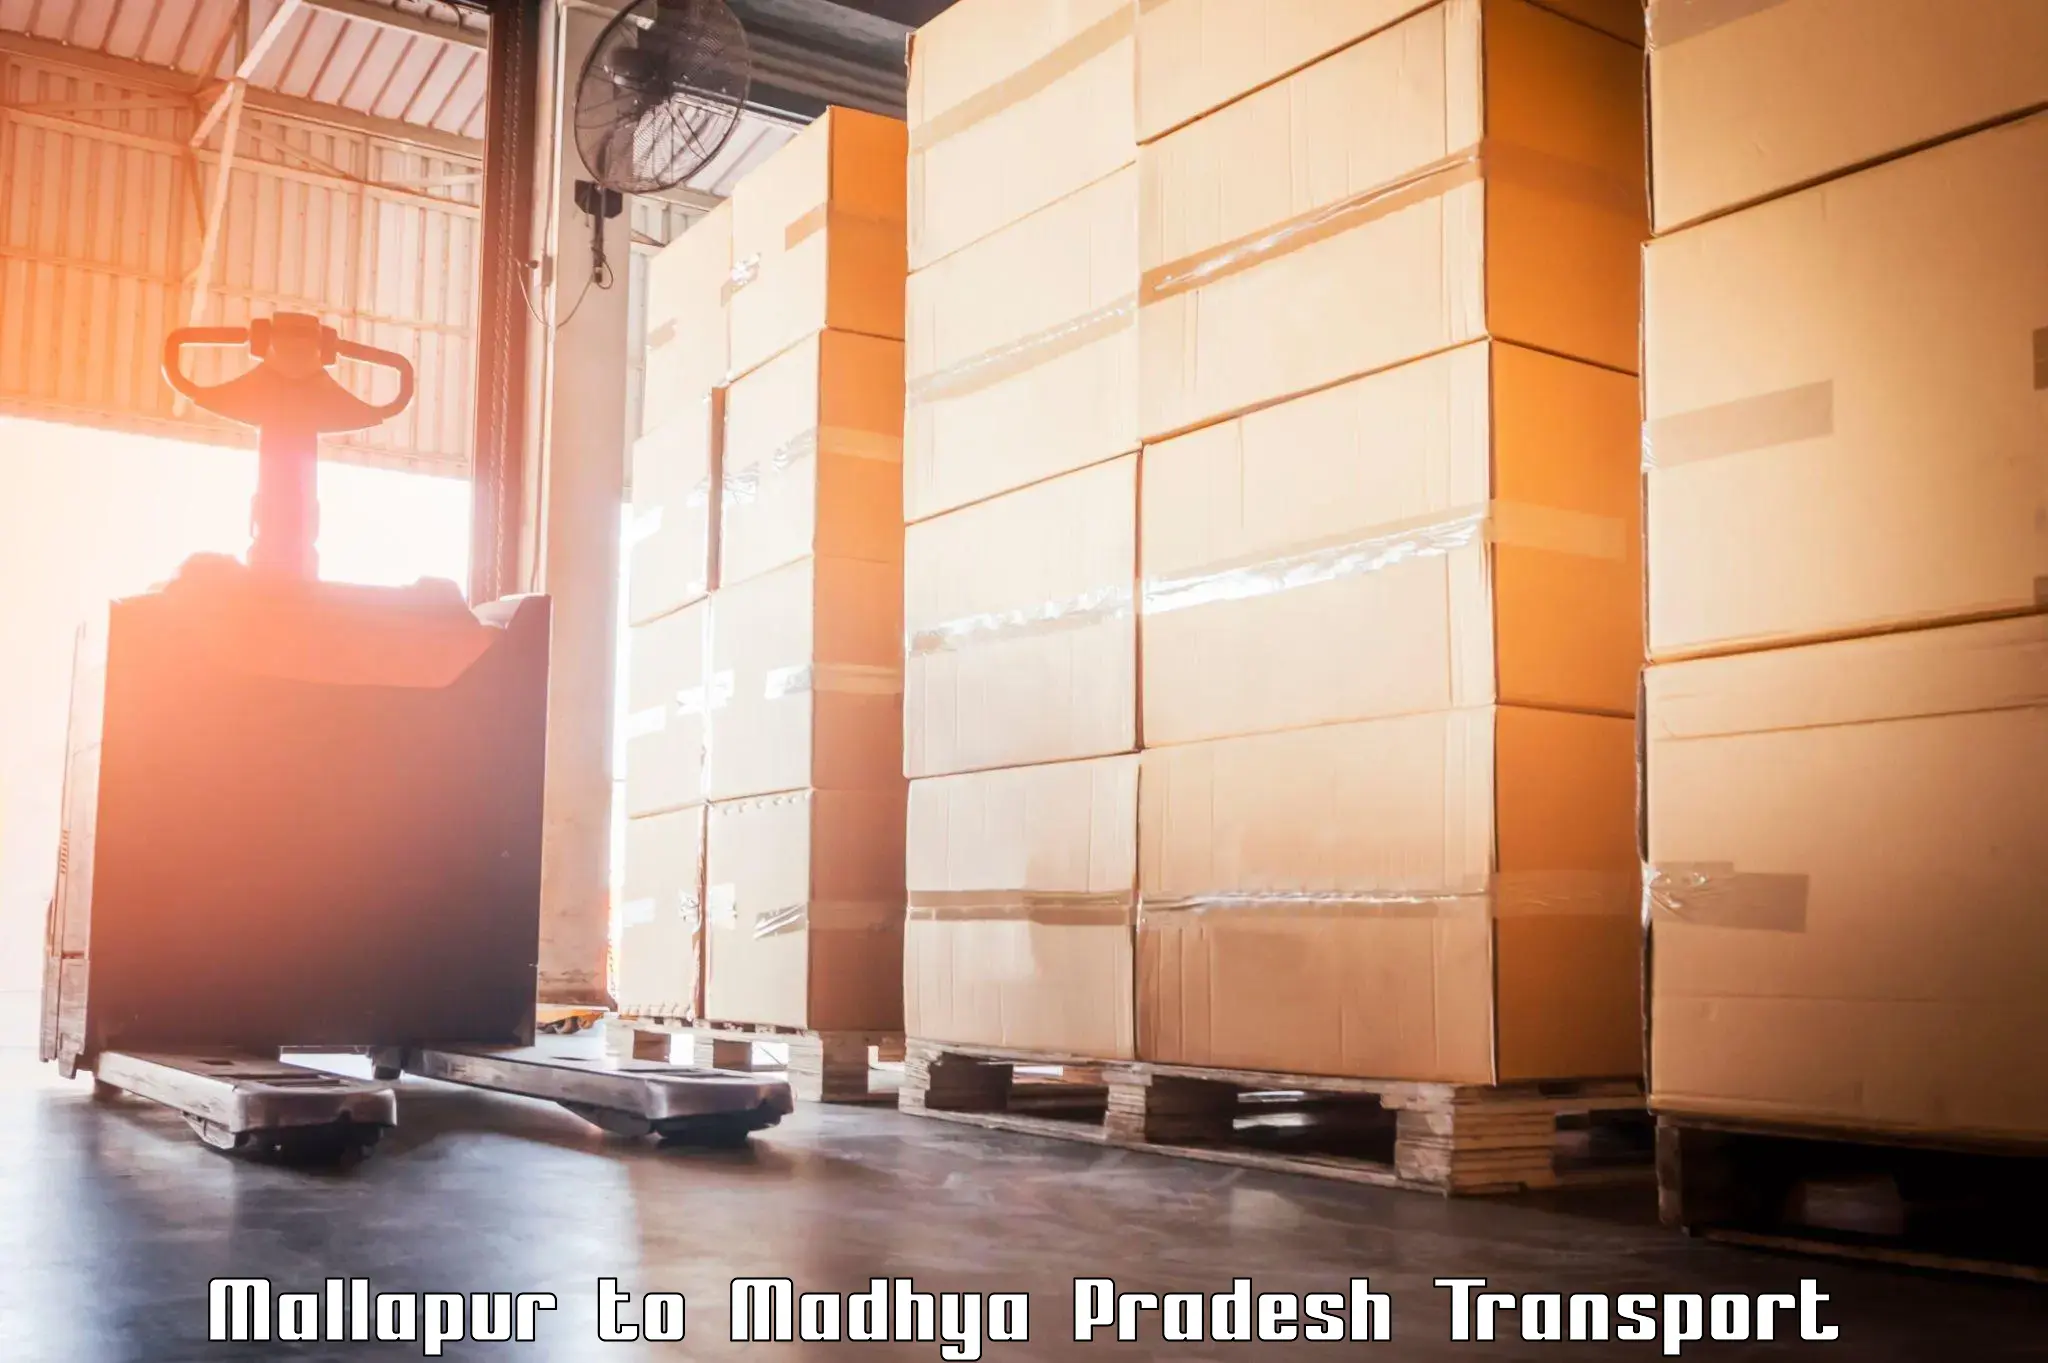 Truck transport companies in India Mallapur to Mandsaur